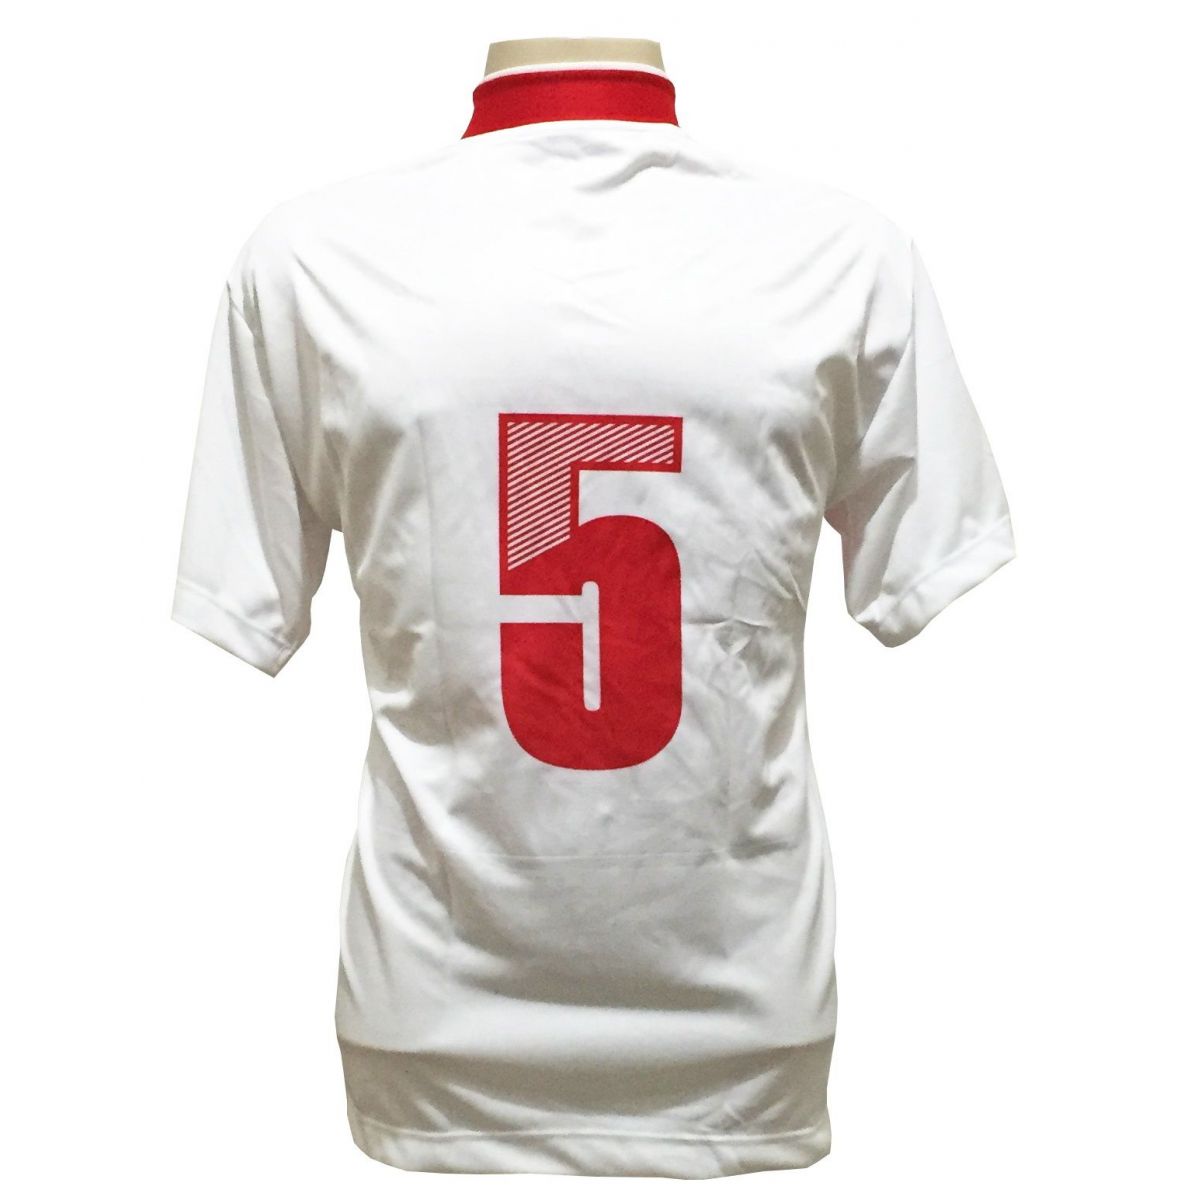 Uniforme Esportivo com 14 camisas modelo Suécia Branco/Vermelho + 14 calções modelo Copa Vermelho/Branco + Brindes